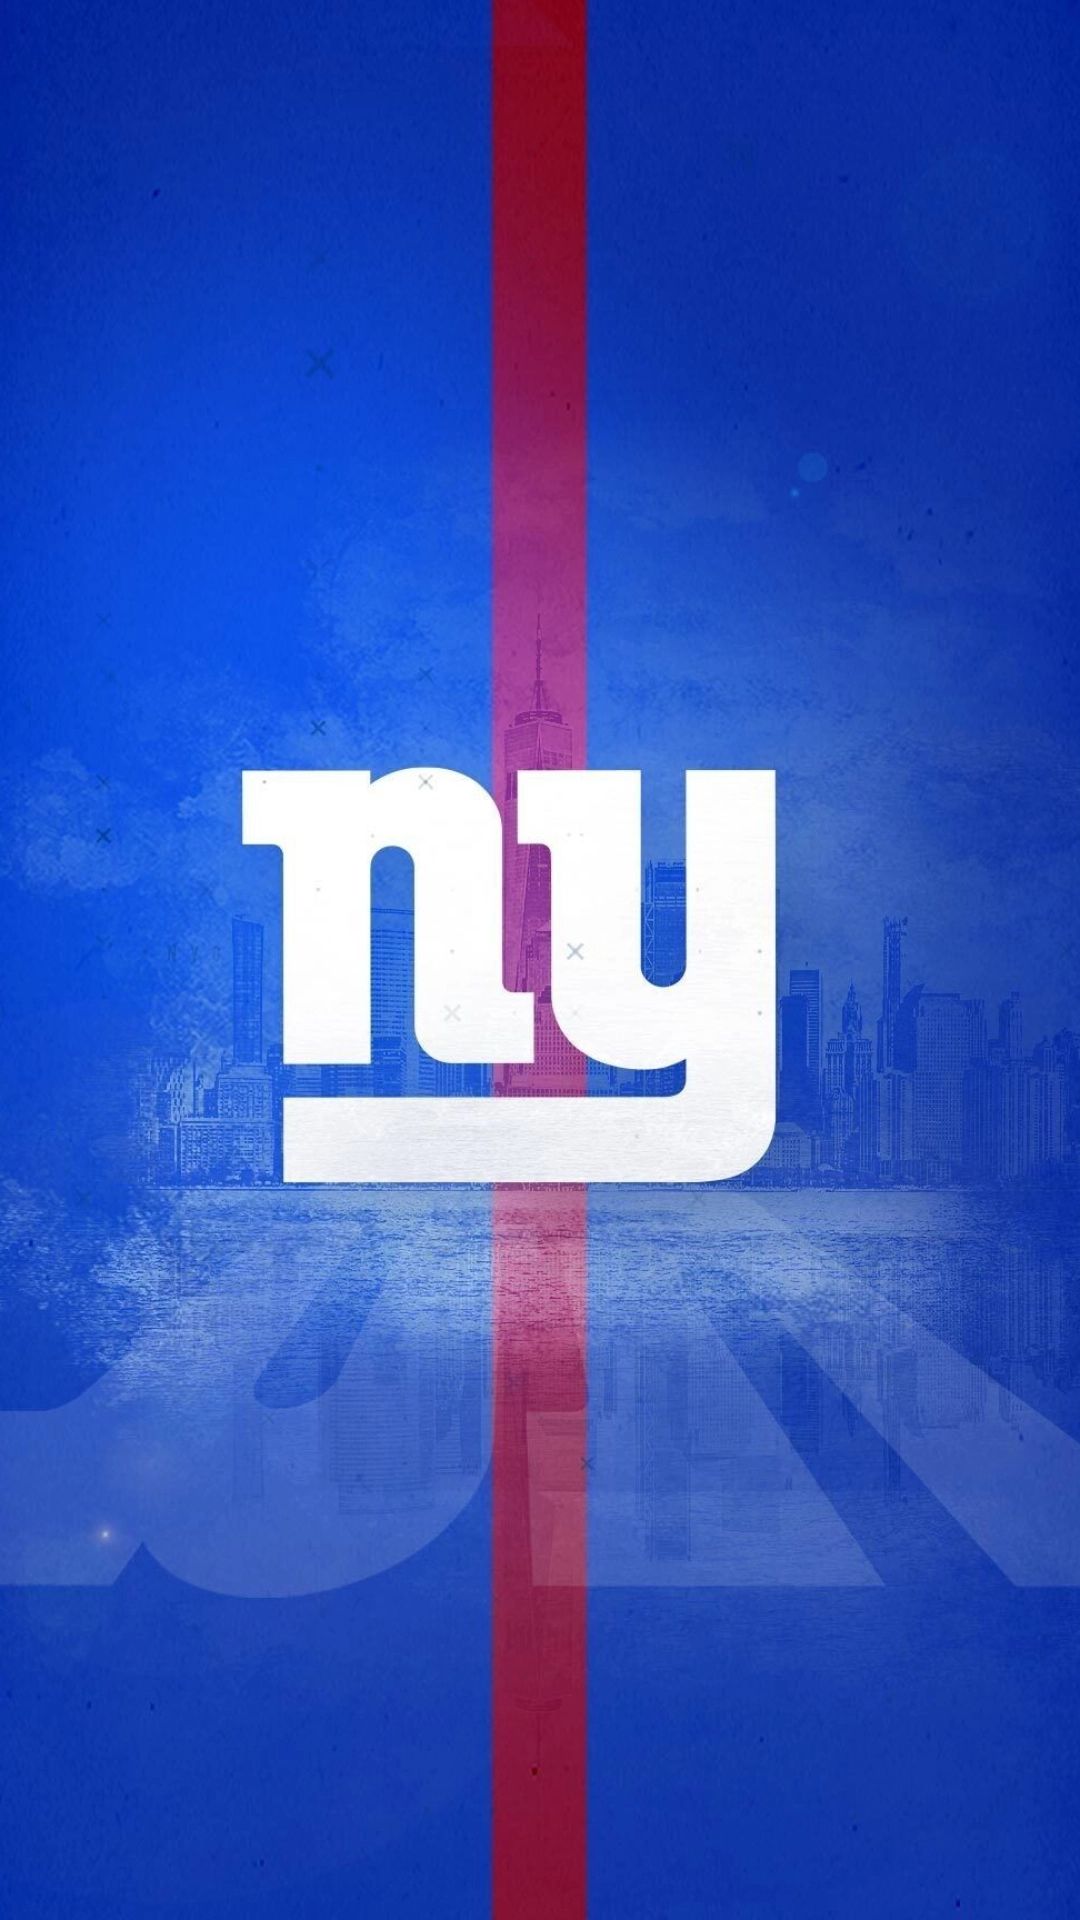 new york giants logo 2022